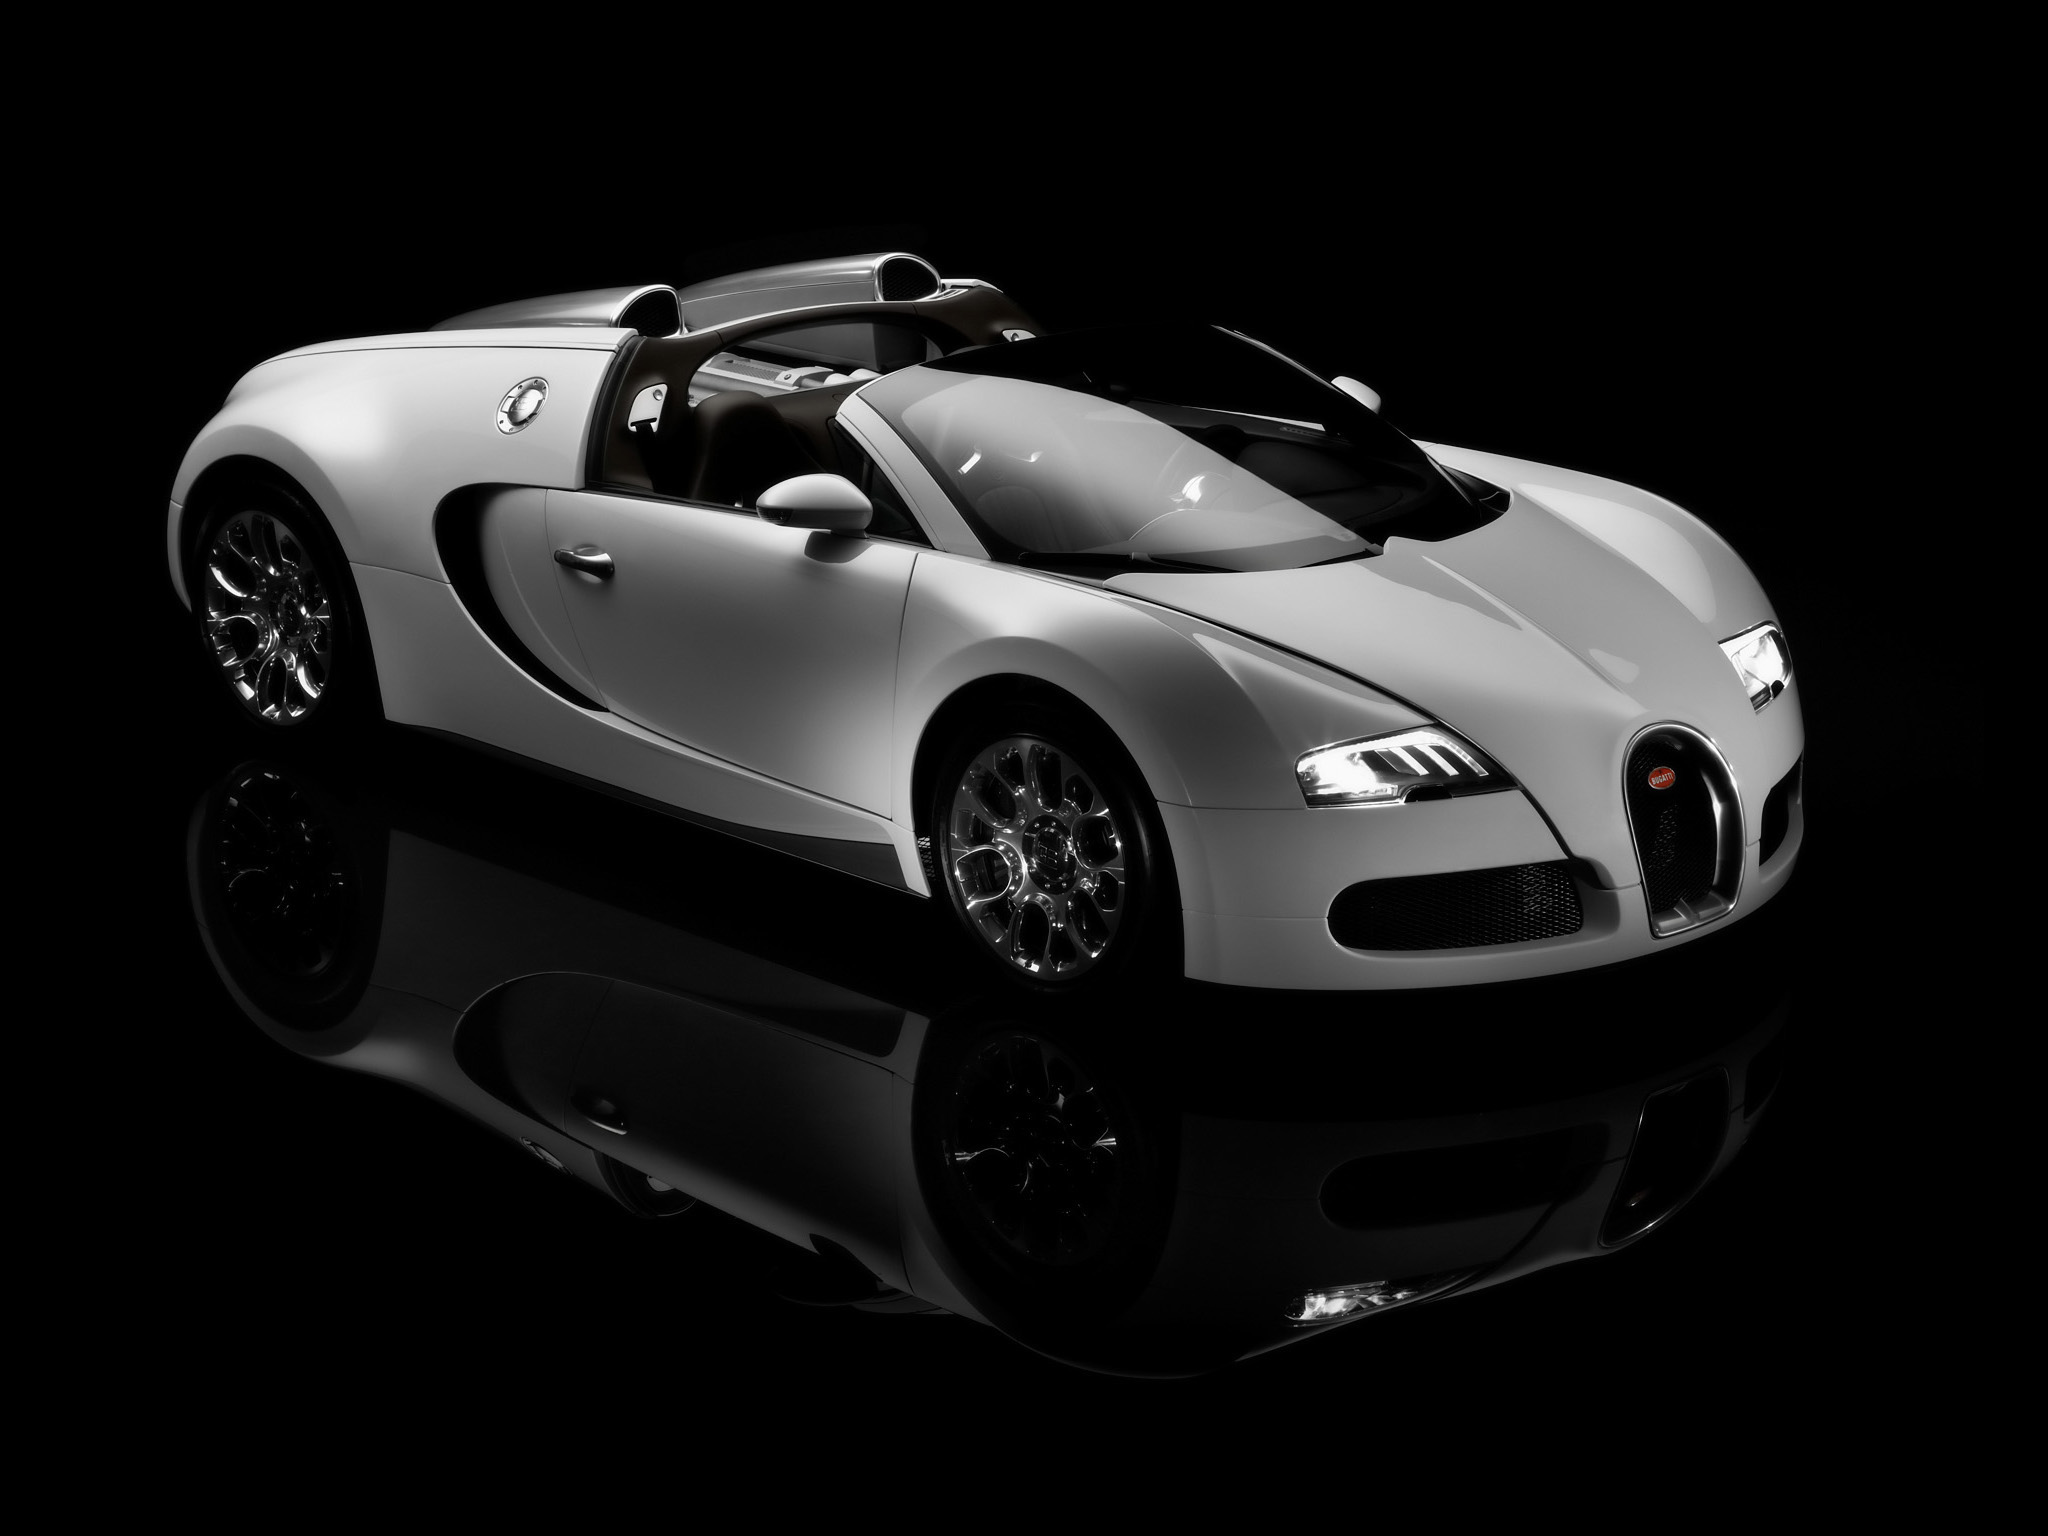 vehicles, bugatti veyron 16 4 grand sport, bugatti, car, supercar